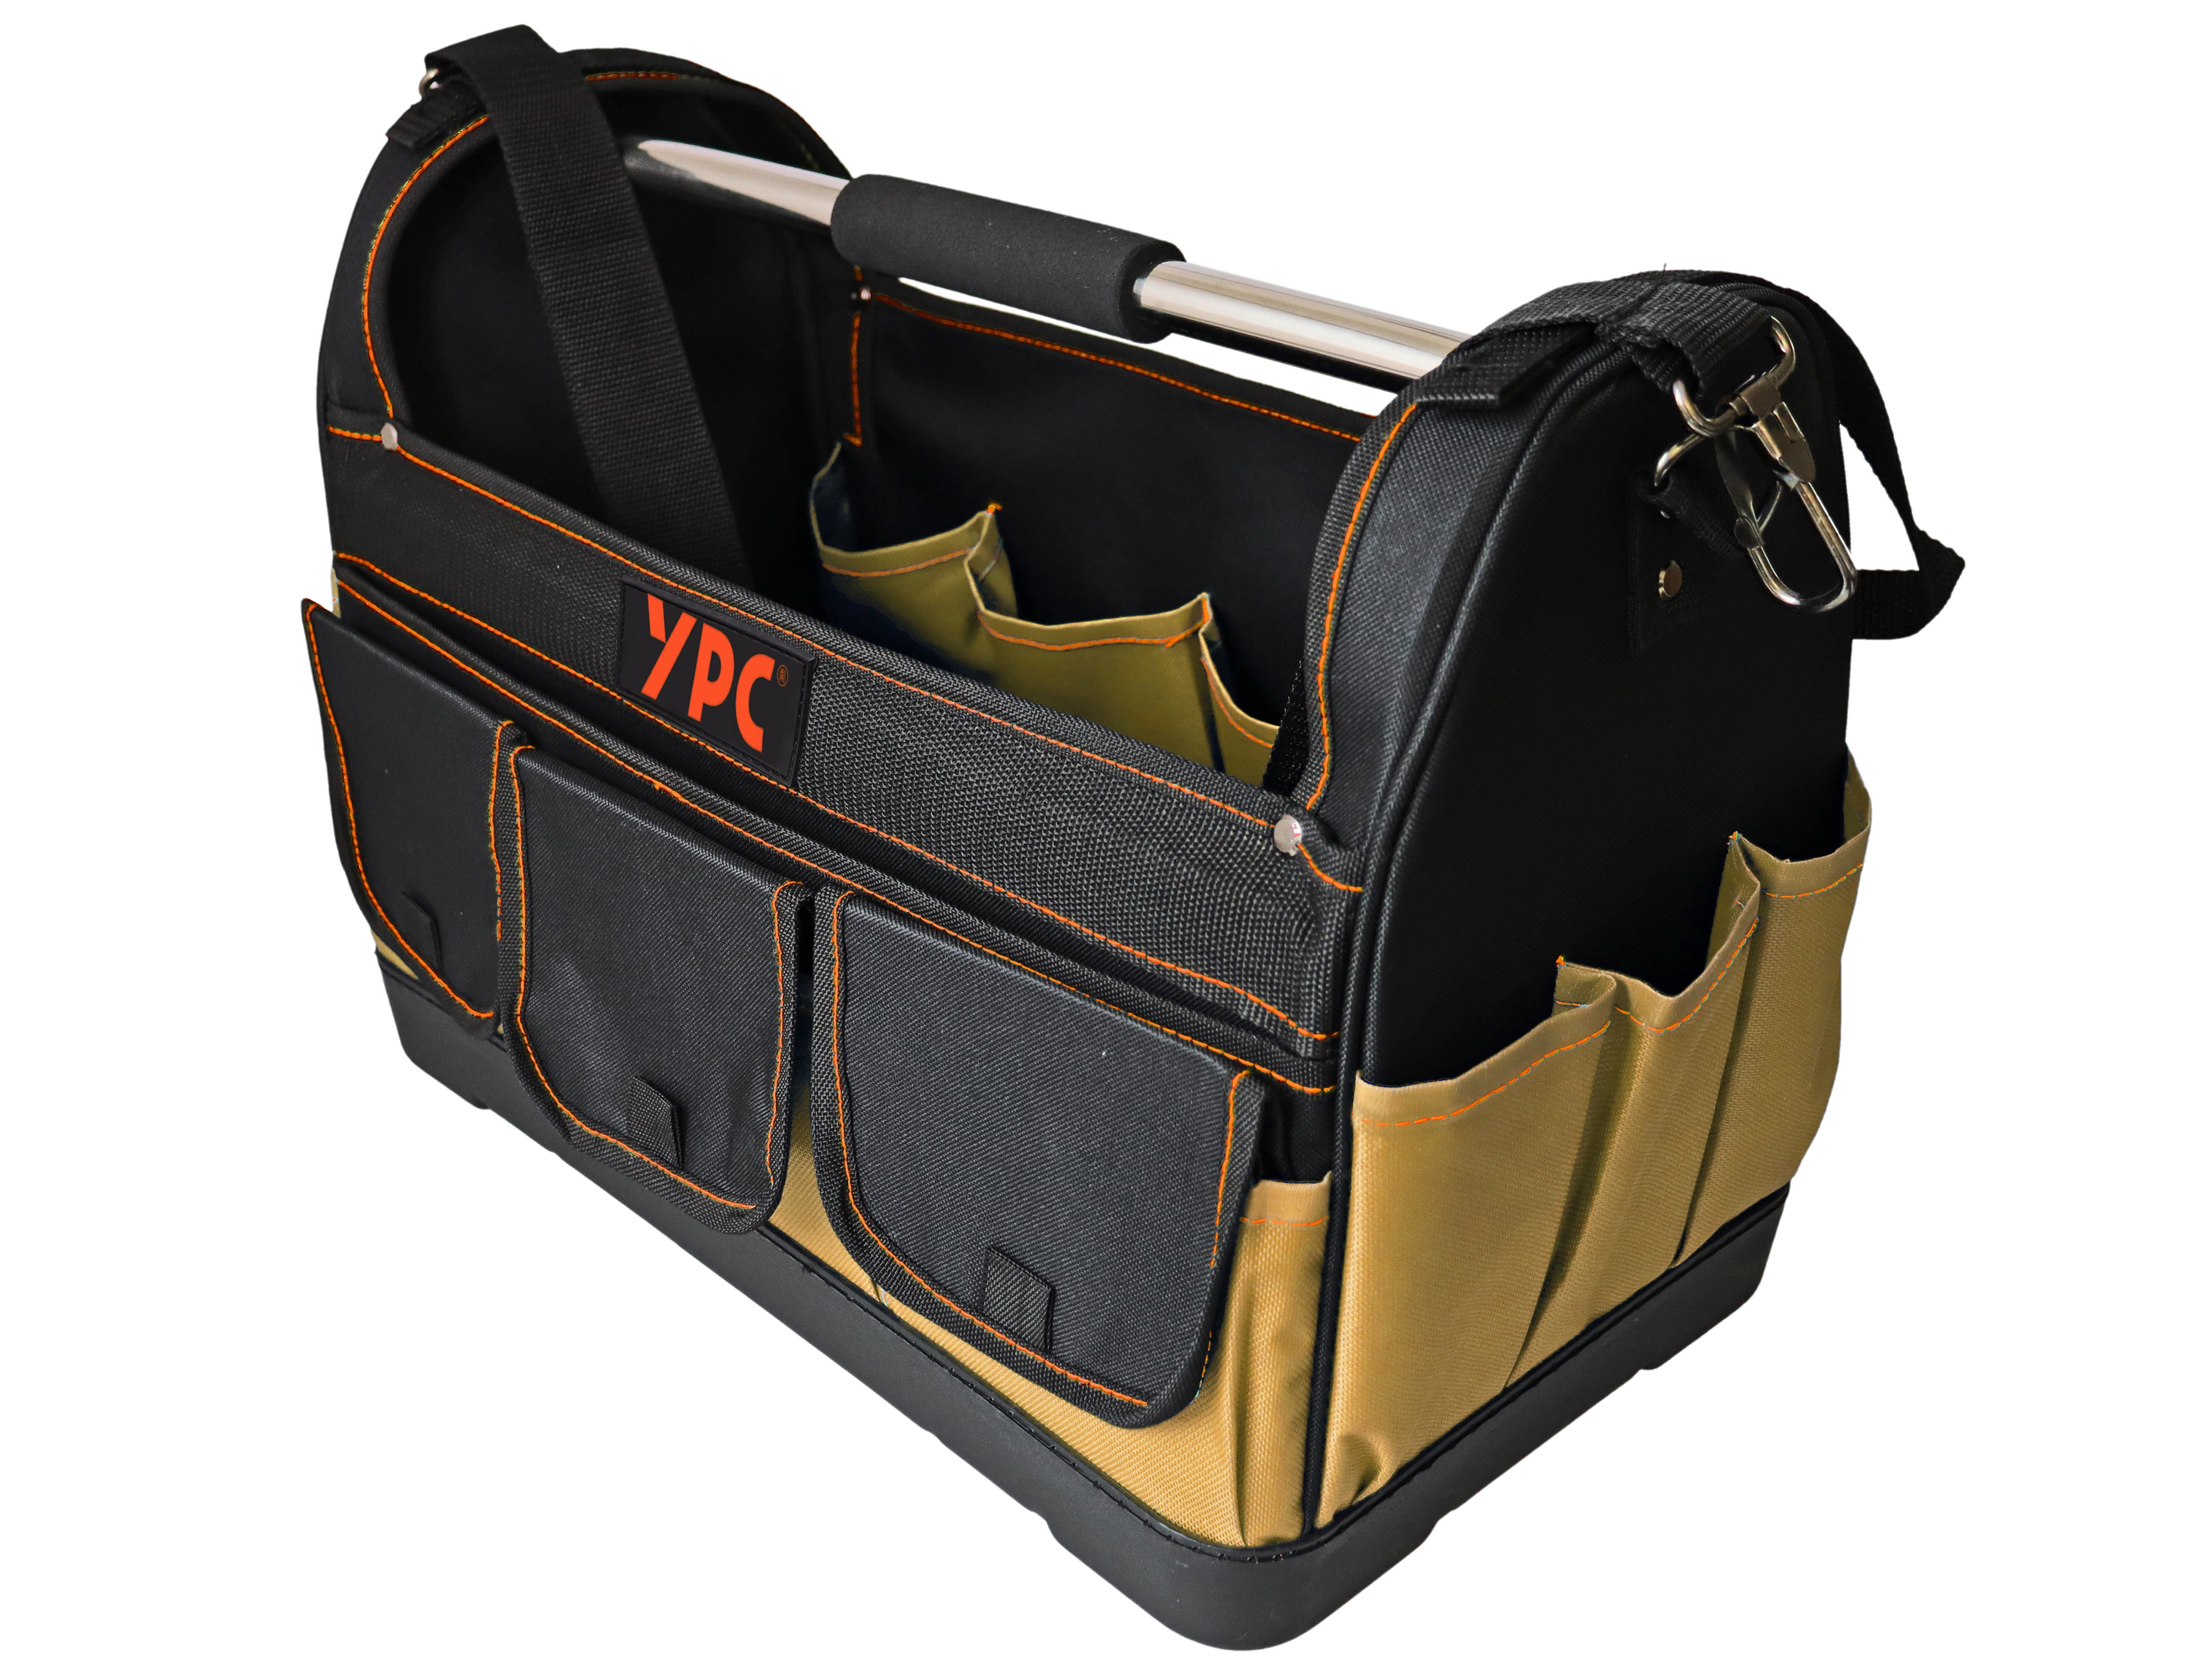 YPC Werkzeugtasche "Pioneer" Werkzeugkorb XXL, offene Werkzeugtasche mit Metallgriff, 45x35x23cm, 20 kg Tragkraft, Tragetasche für Werkzeug mit Haltern, Fächern und Einschüben Beige